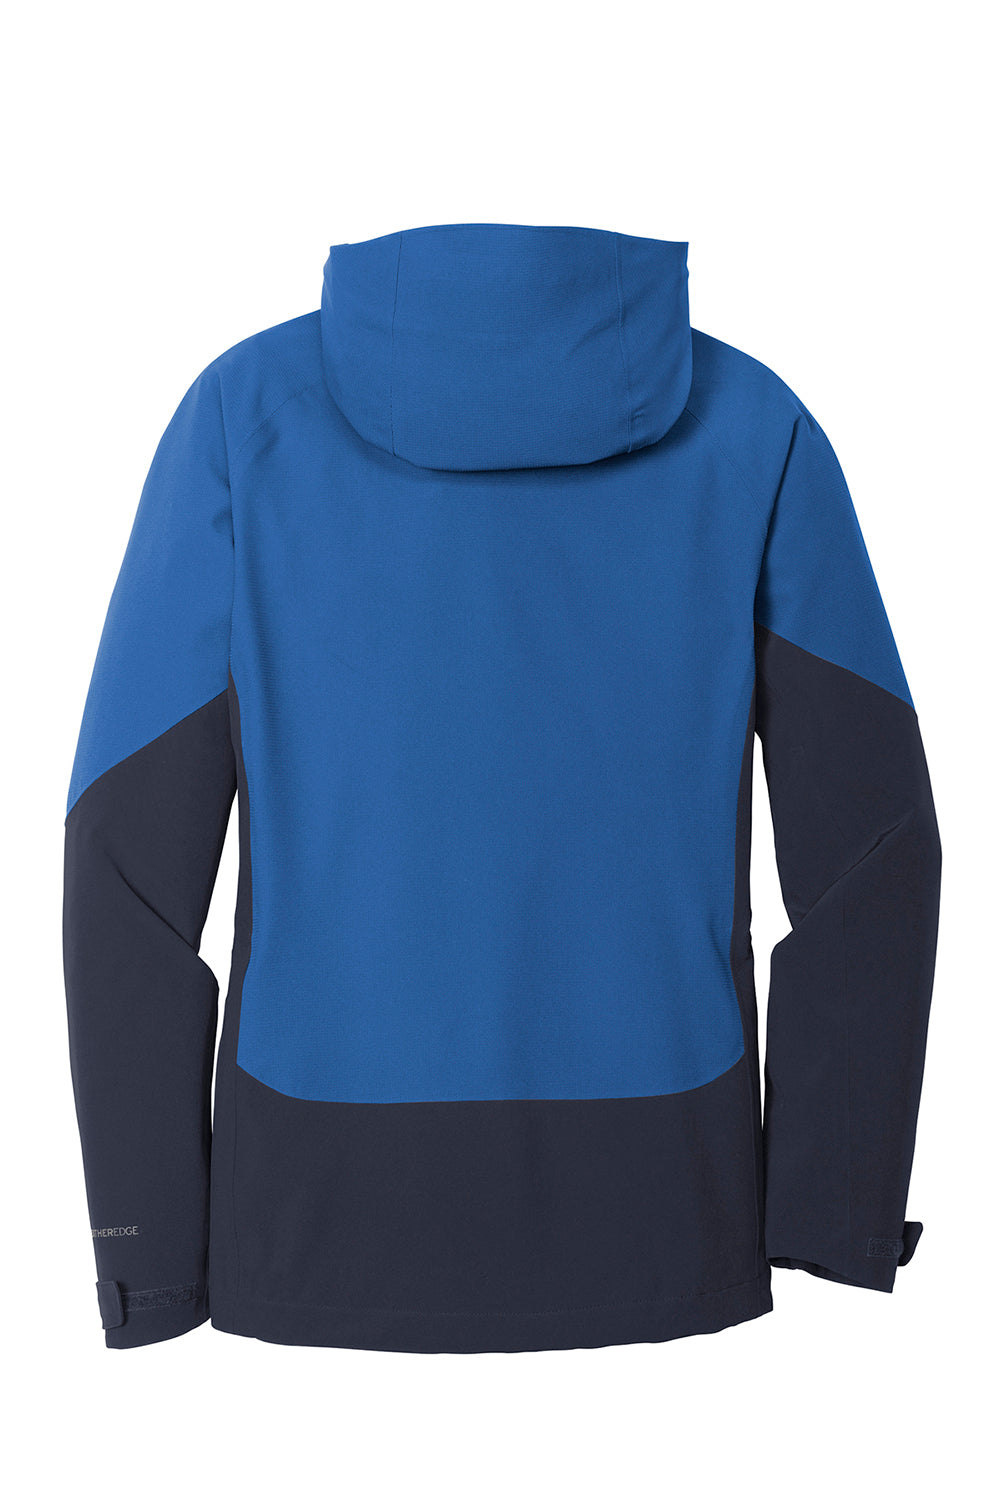 Eddie Bauer EB559 Womens WeatherEdge Waterproof Full Zip Hooded Jacket Cobalt Blue Flat Back